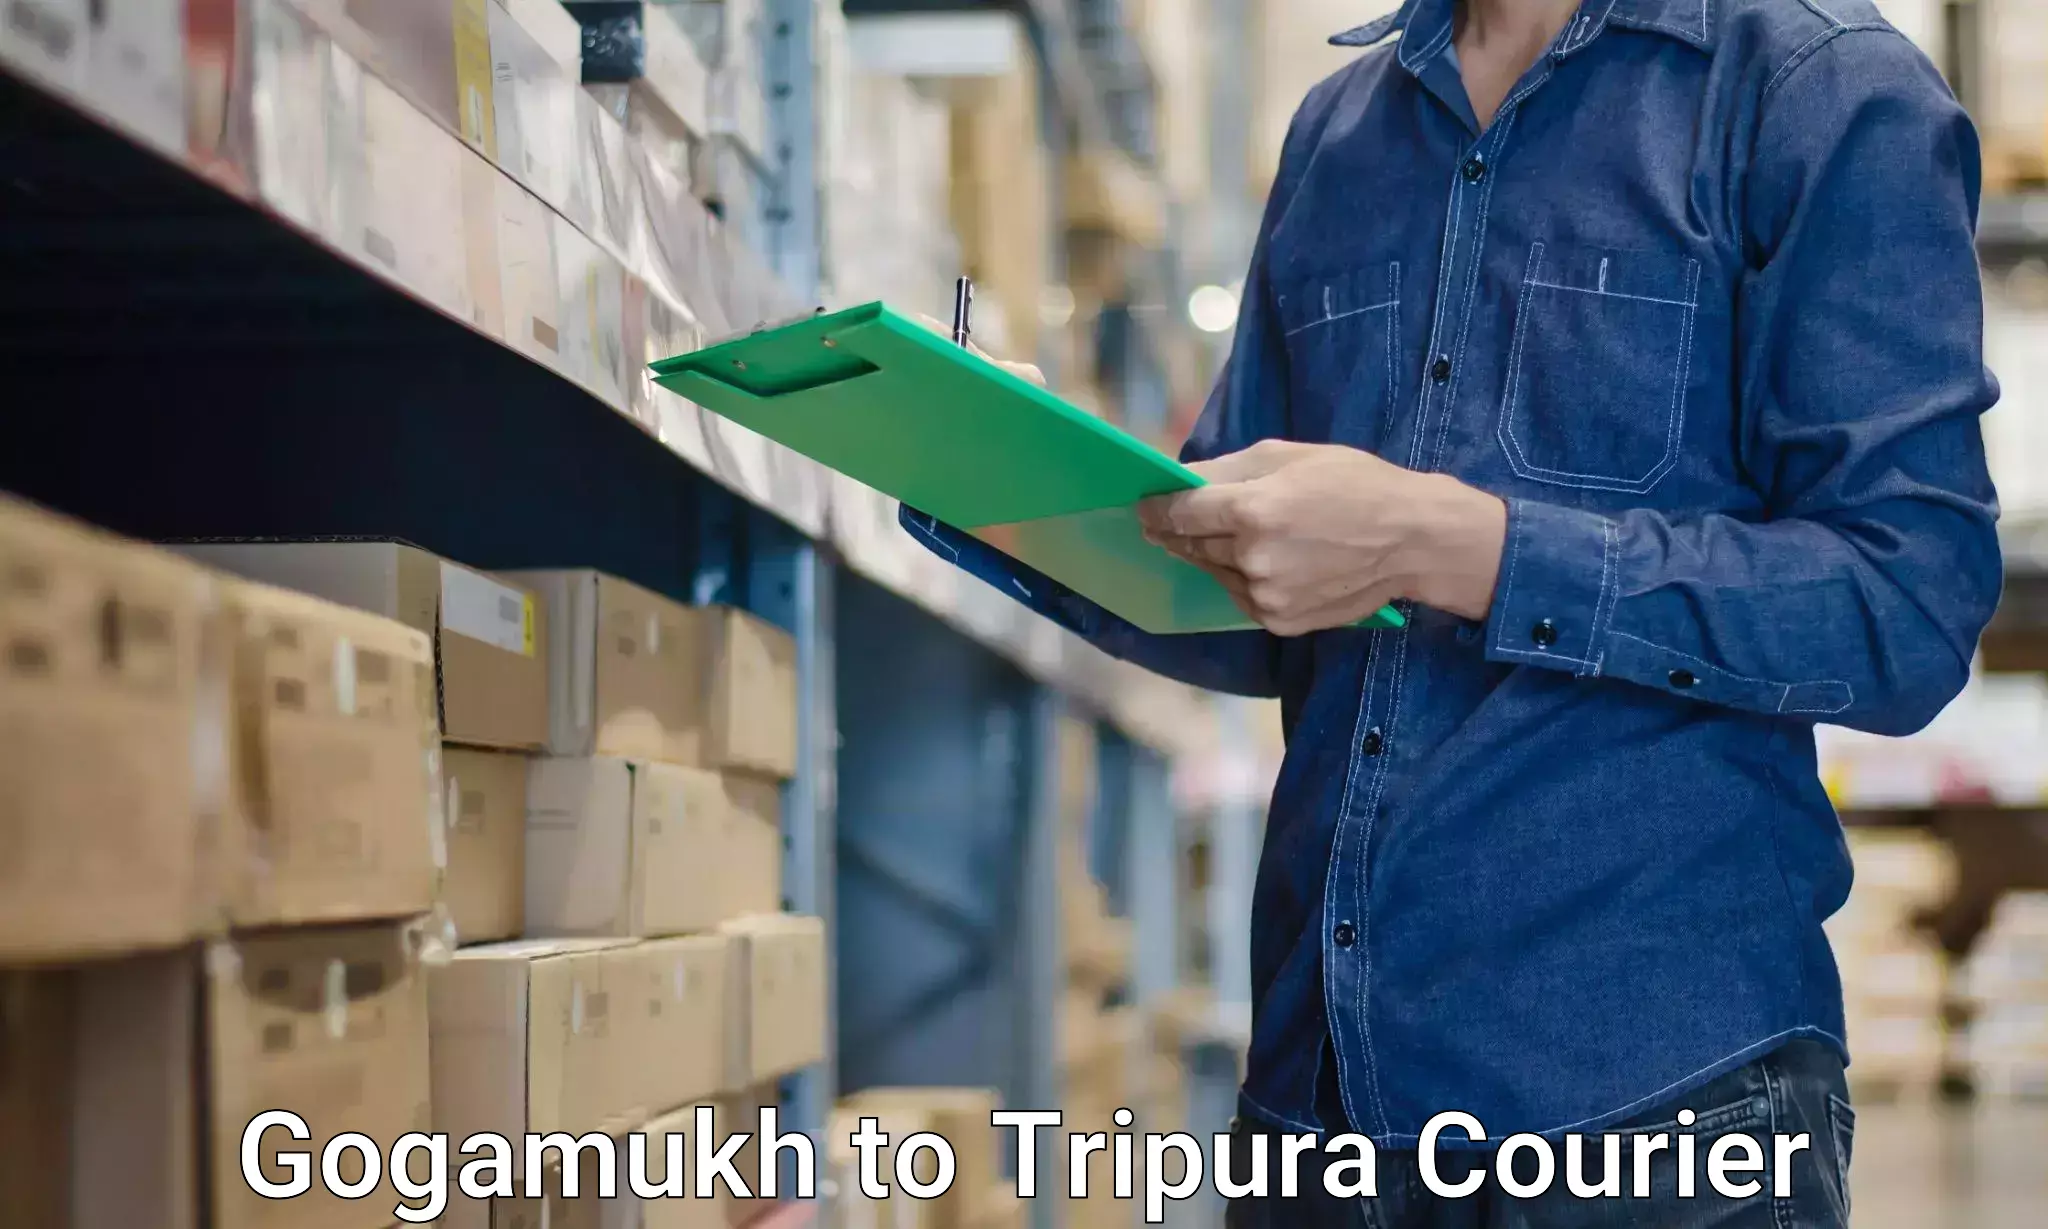 Furniture moving experts Gogamukh to West Tripura